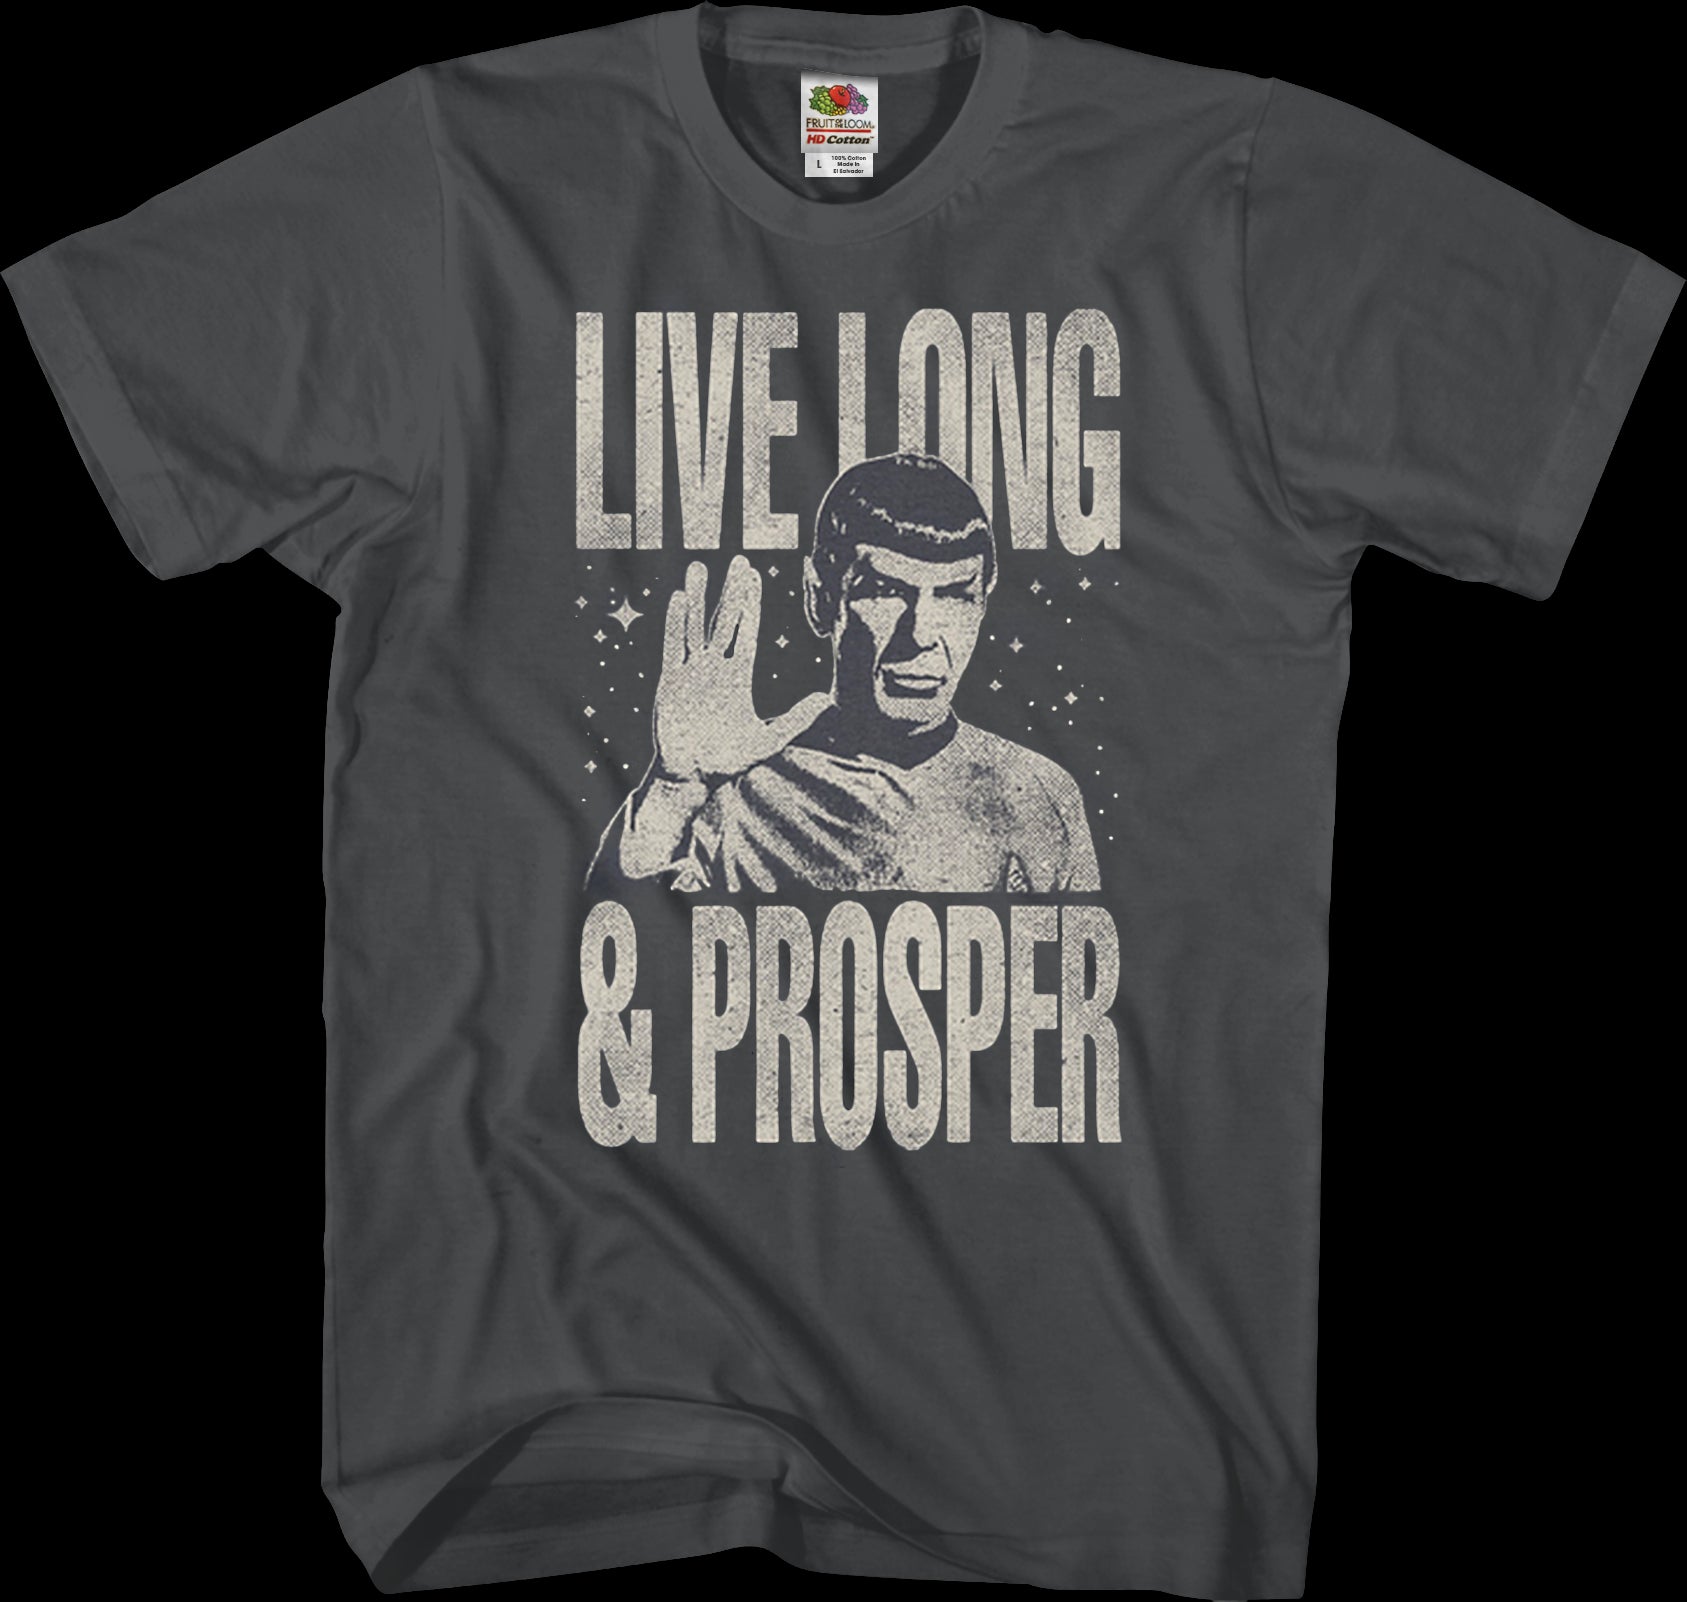 Star Trek T-Shirt Mens Shirt Spock Tshirt Live Long and Prosper T Shirt Gift  Shirt Gift for Men